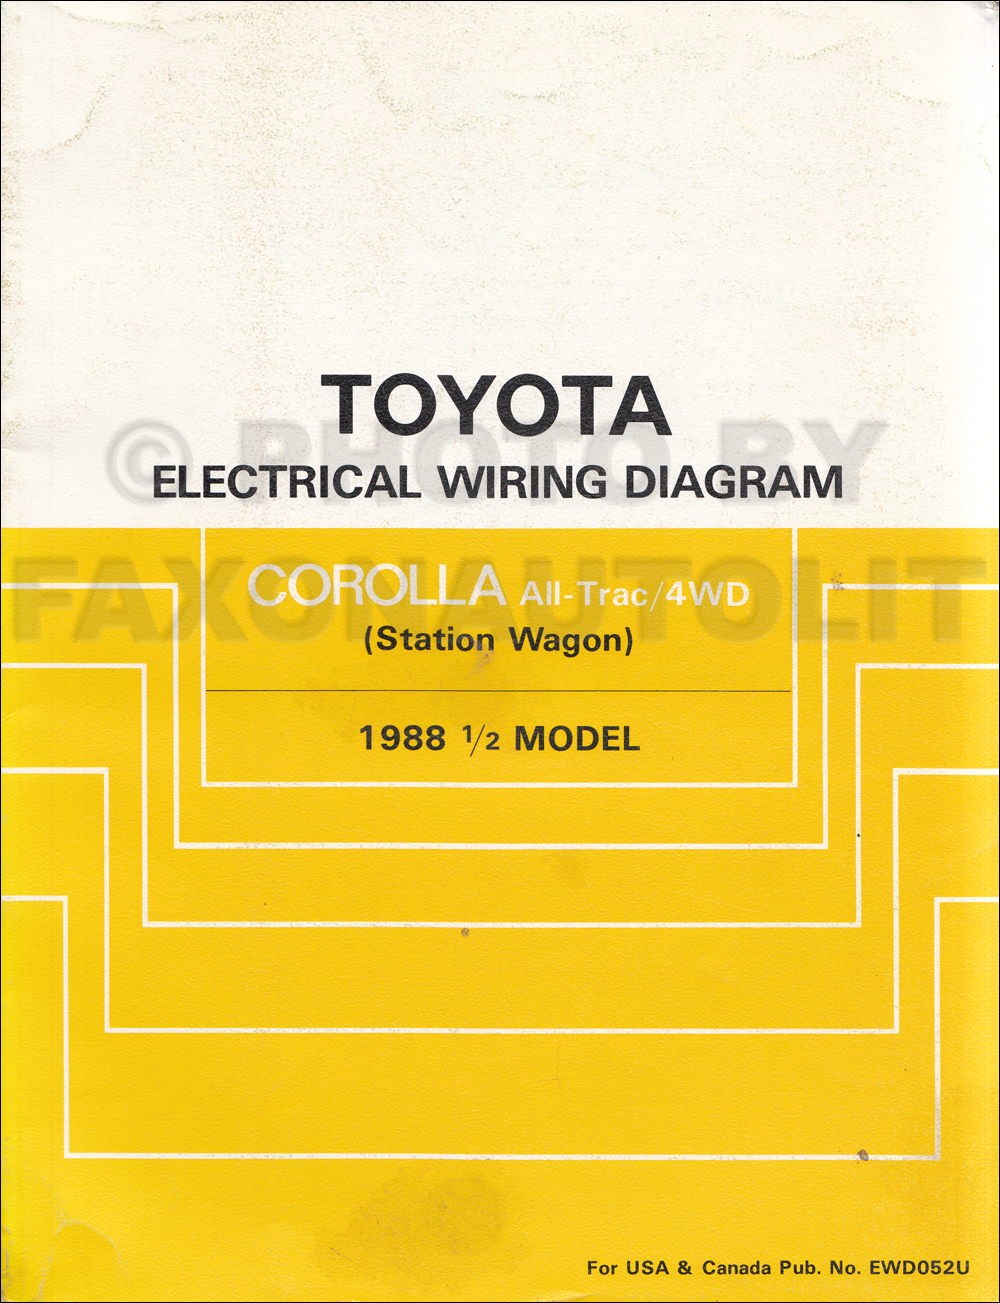 Toyota corolla repair manual download